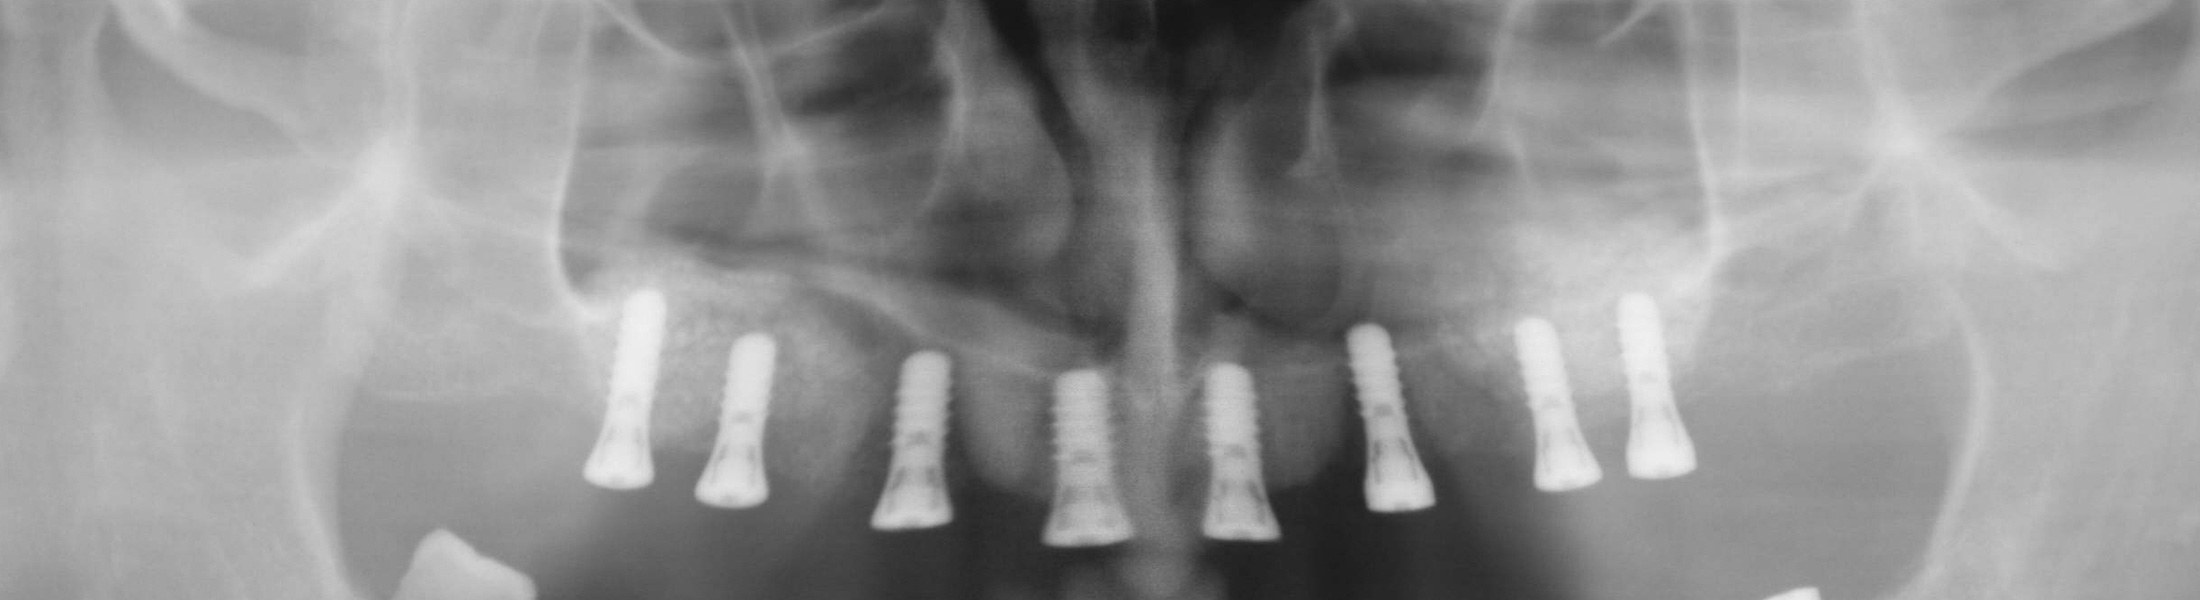 Zahnarzt Implantat Hildesheim